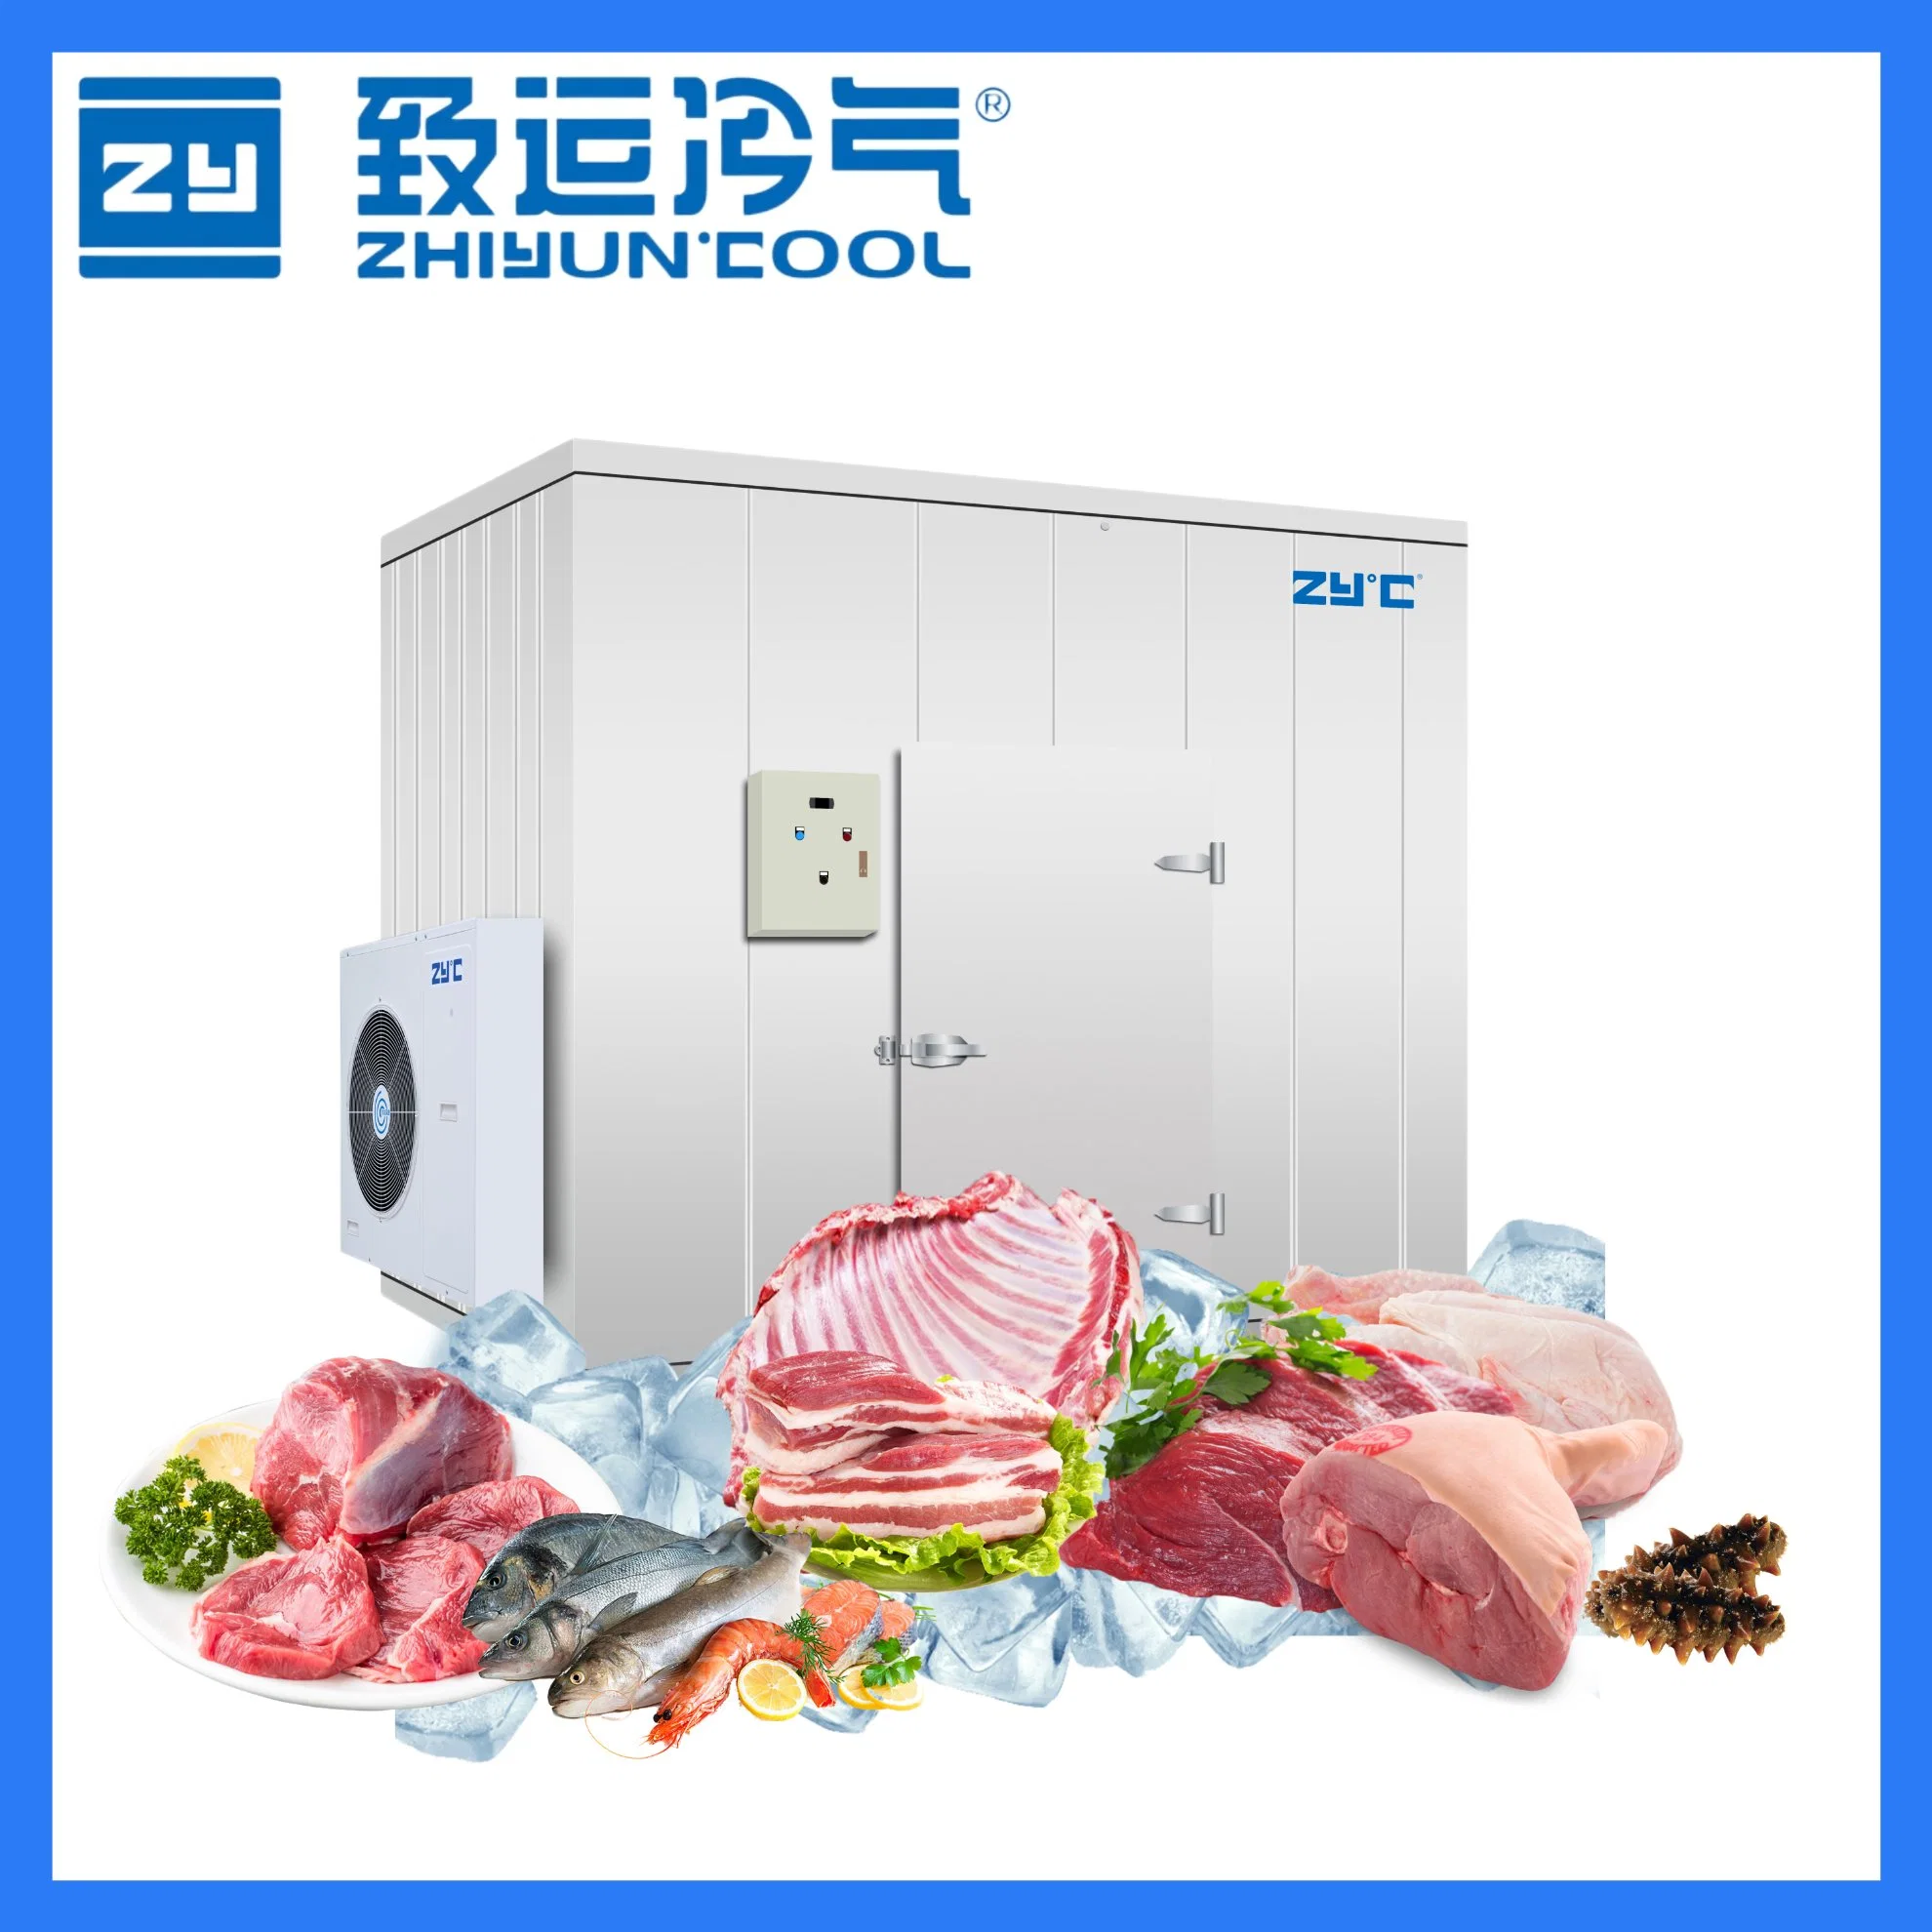 Chambre froide congélateur pour la viande, les fruits de mer, les médicaments, les produits chimiques, la glace et la congélation rapide